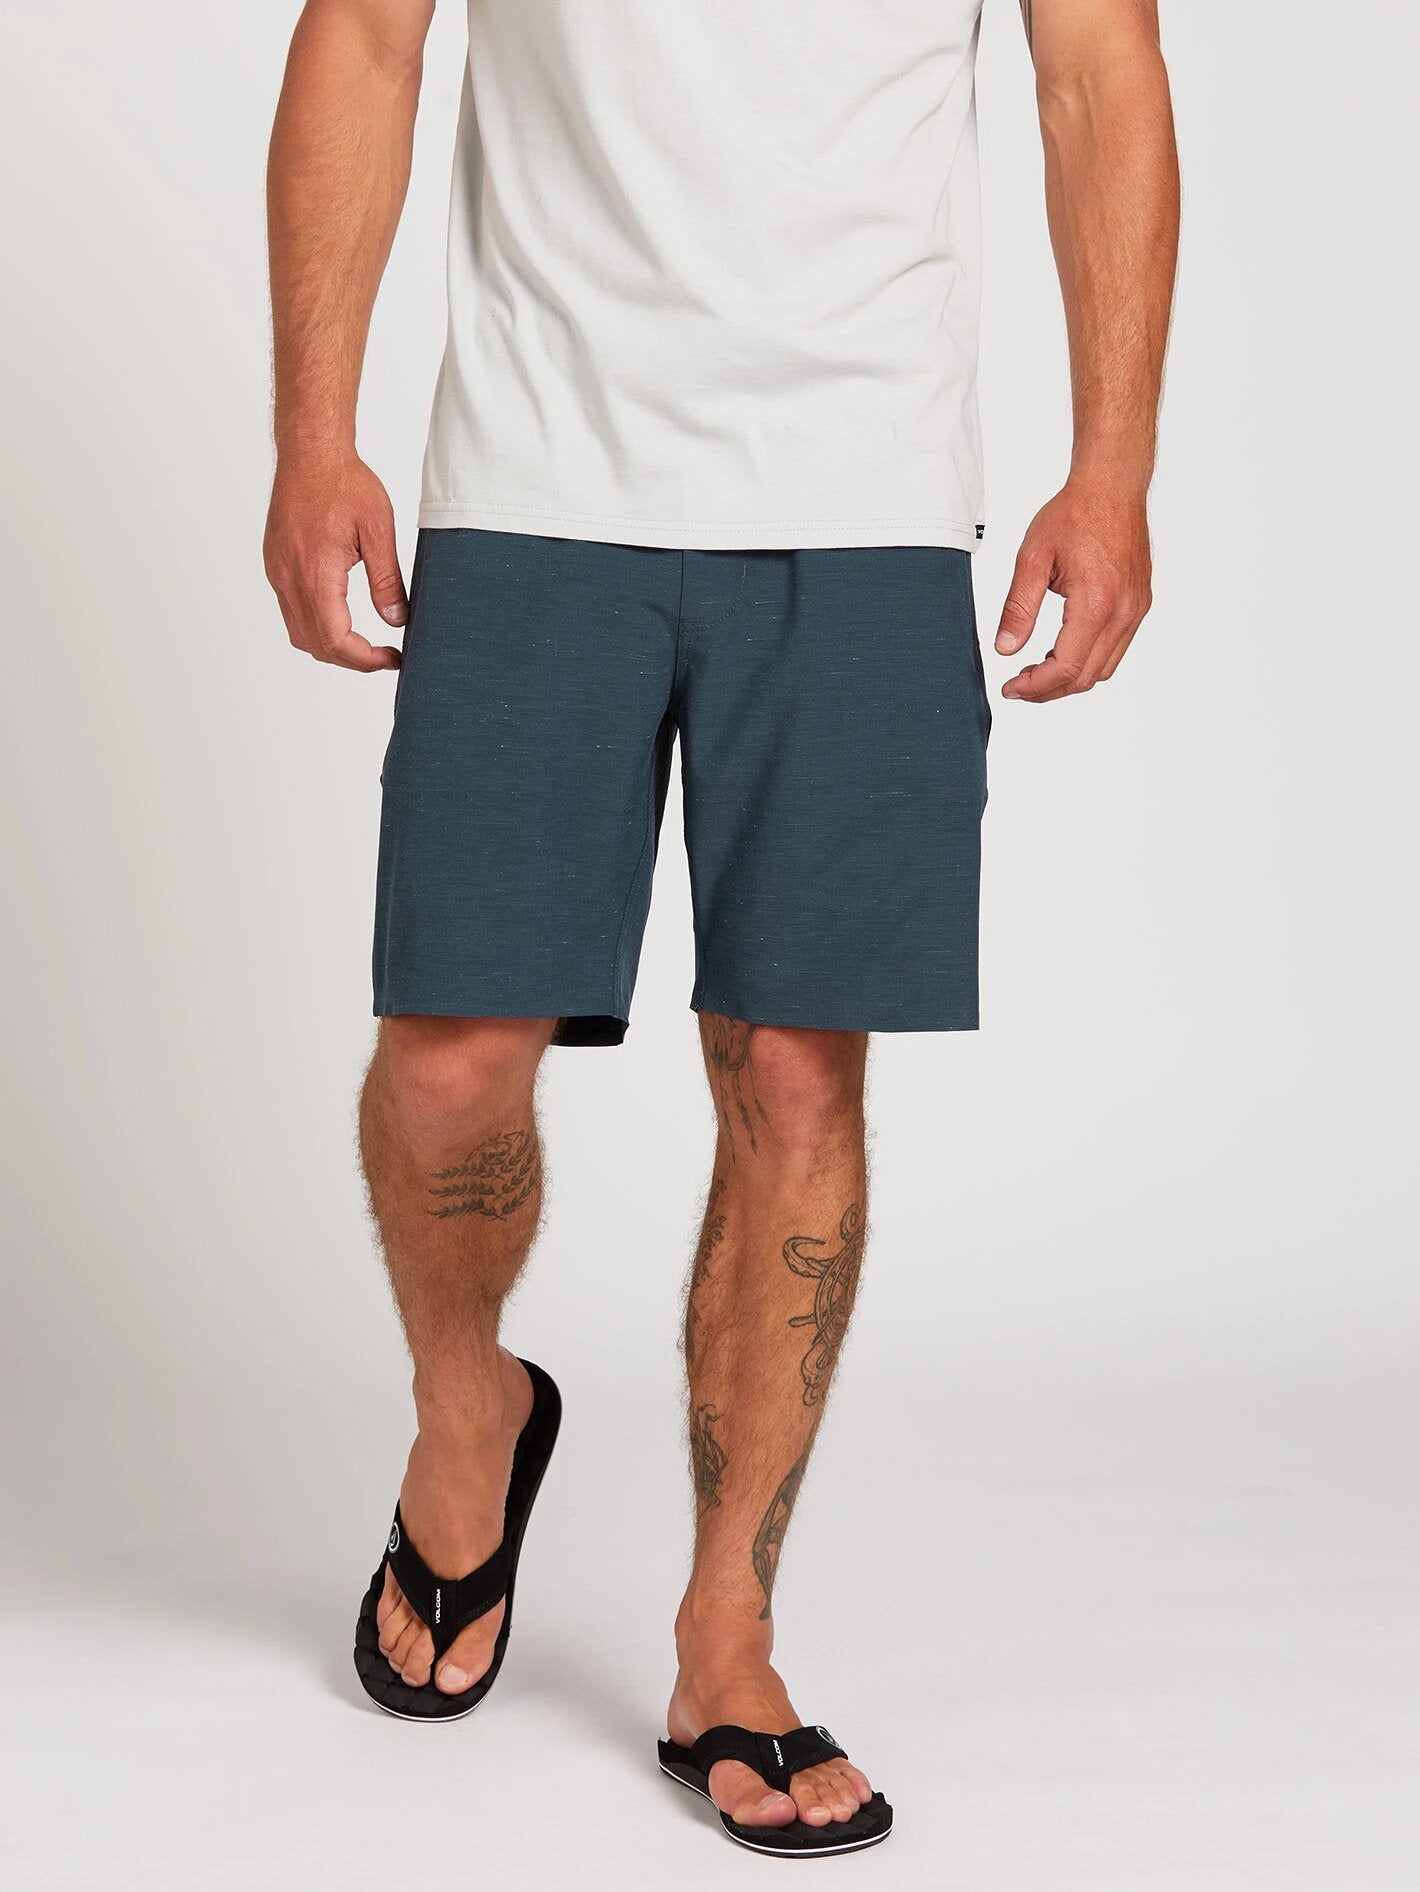 Volcom Packasack Lite 19" Mens Shorts - Faded Navy Mens Shorts